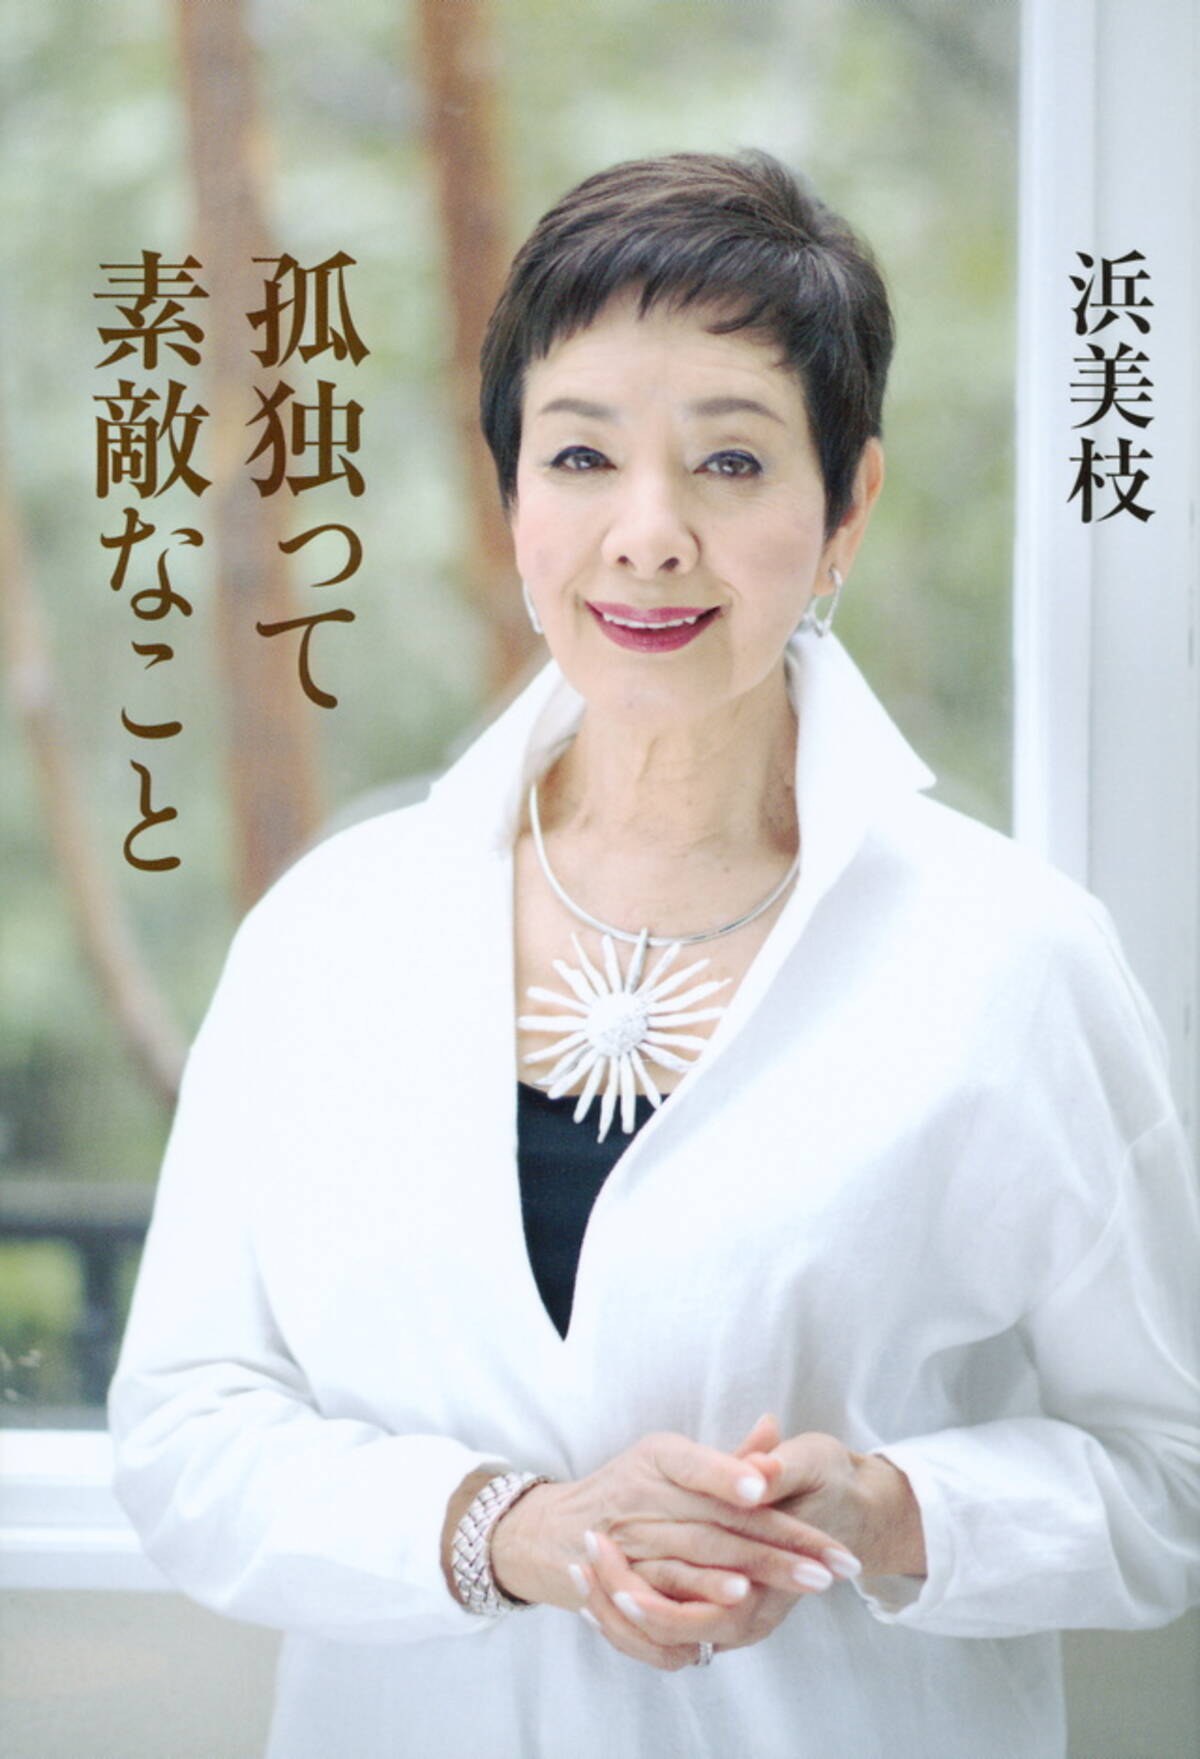 日本人初のボンドガール 浜美枝の告白 孤独の先に素晴らしい人生がある 16年12月1日 エキサイトニュース